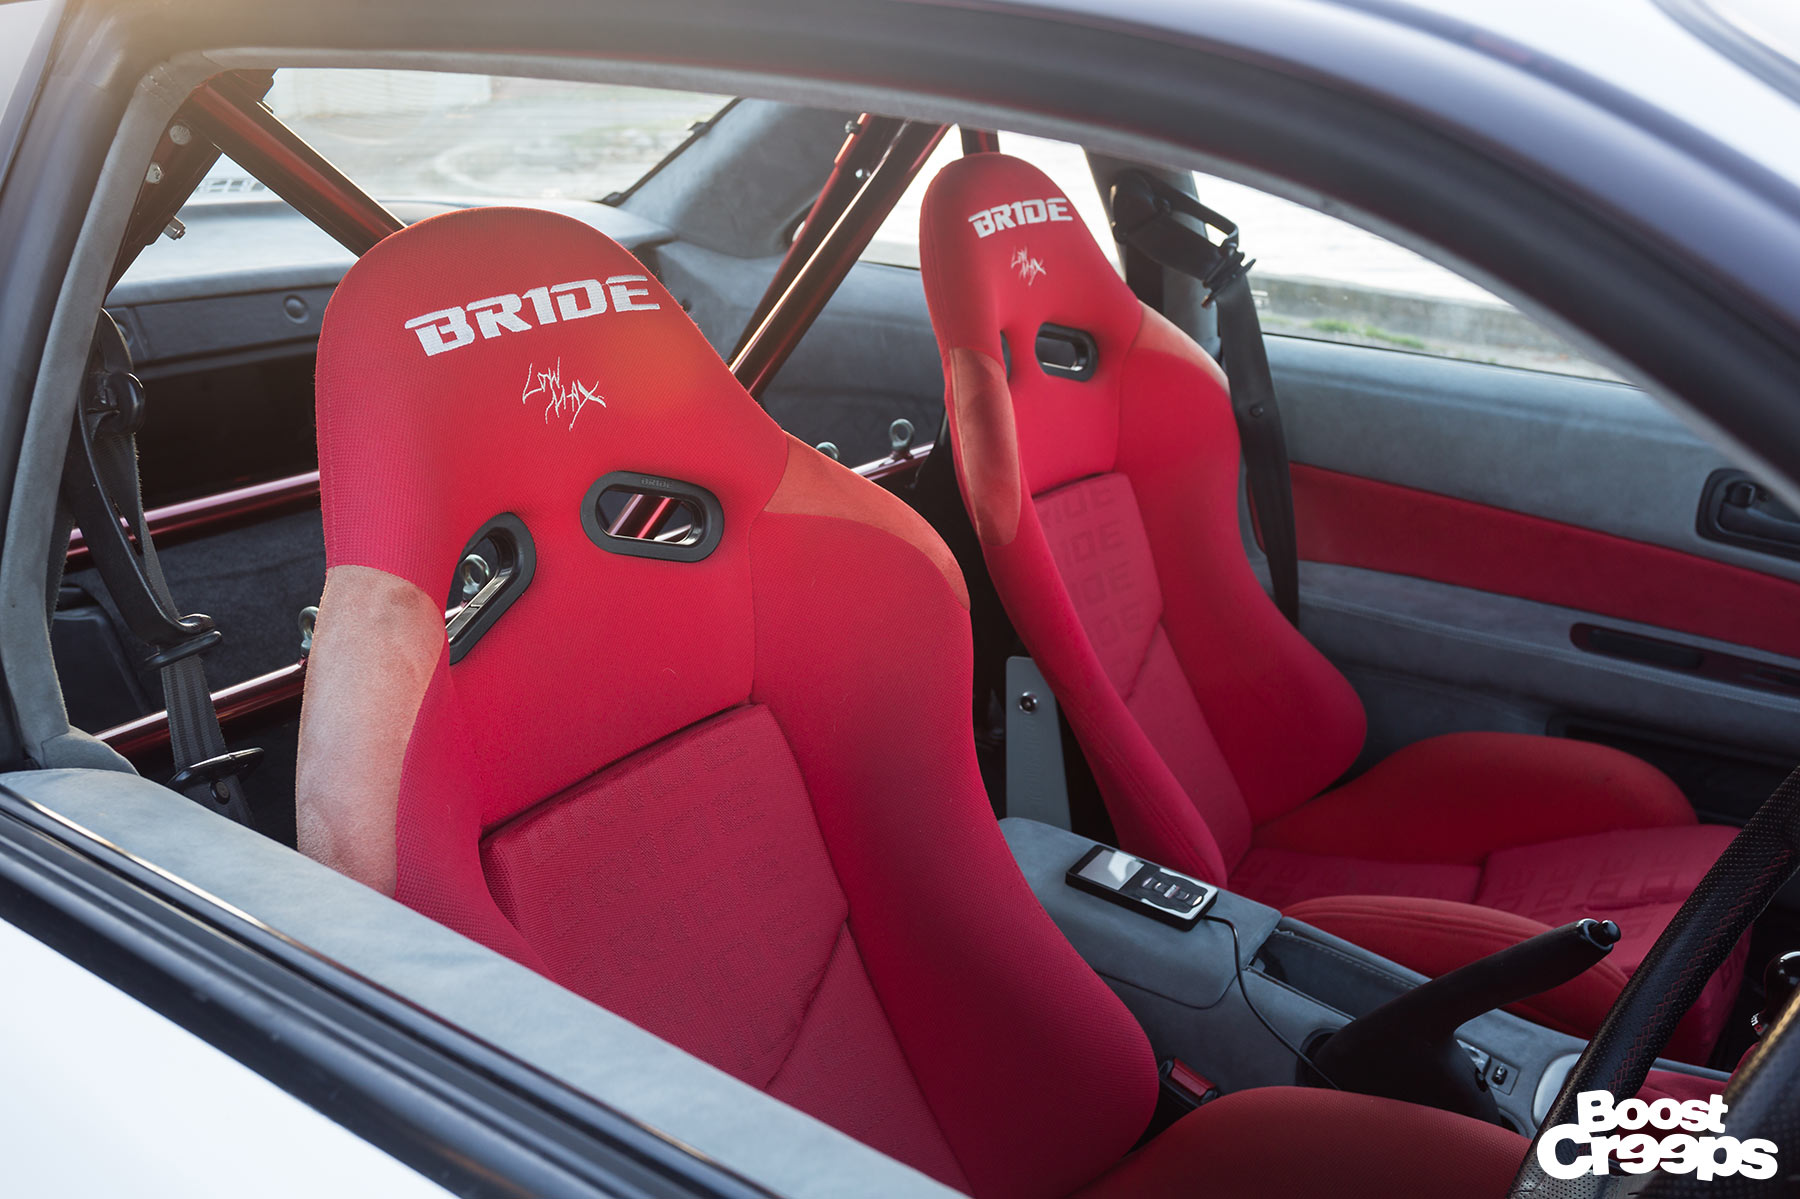 Rocket Bunny S14 Bride Stradia seats